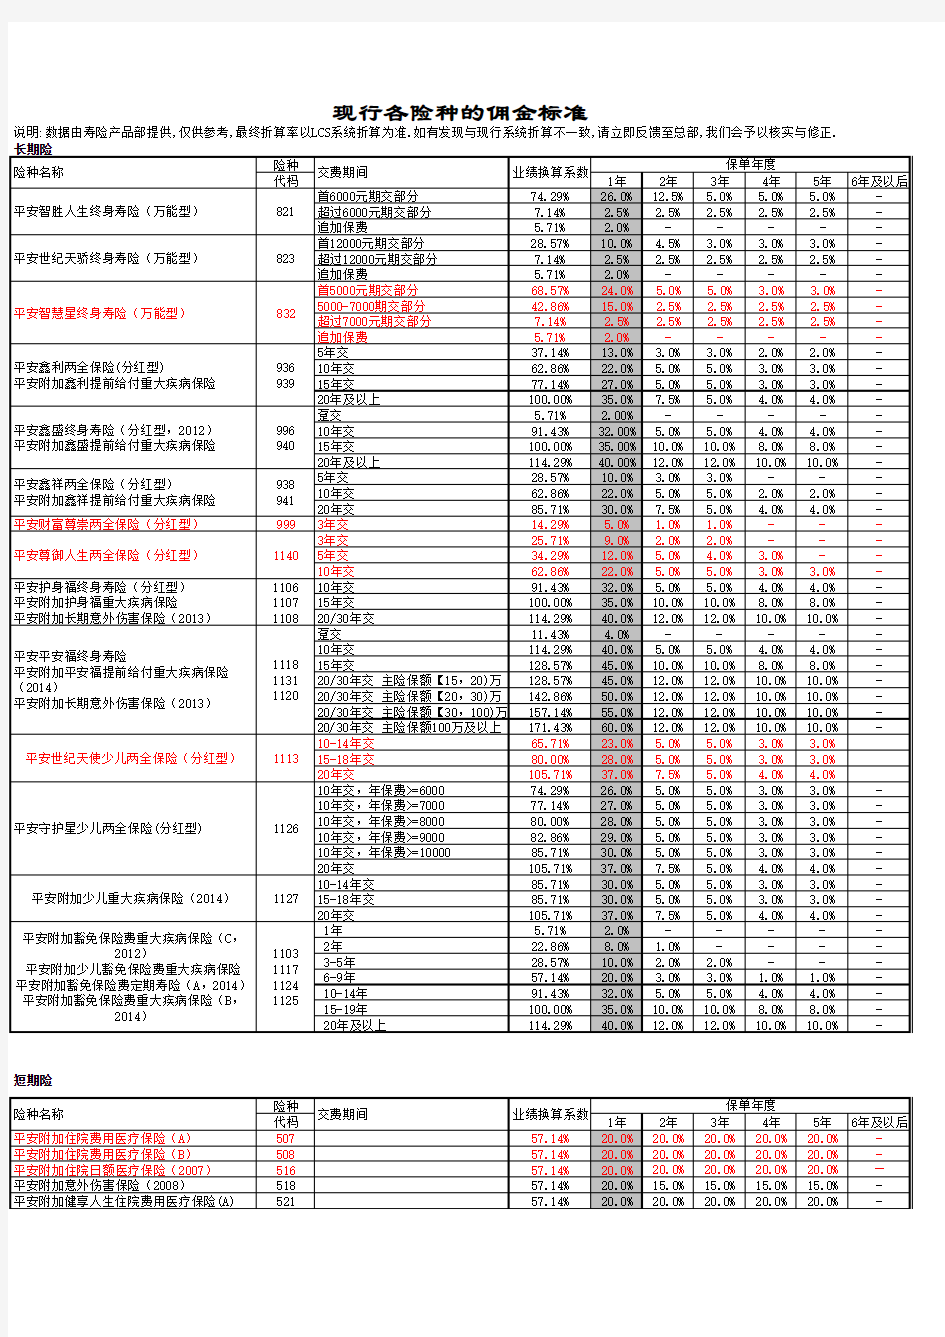 平安人寿险种业绩佣金折算表(2015年版)